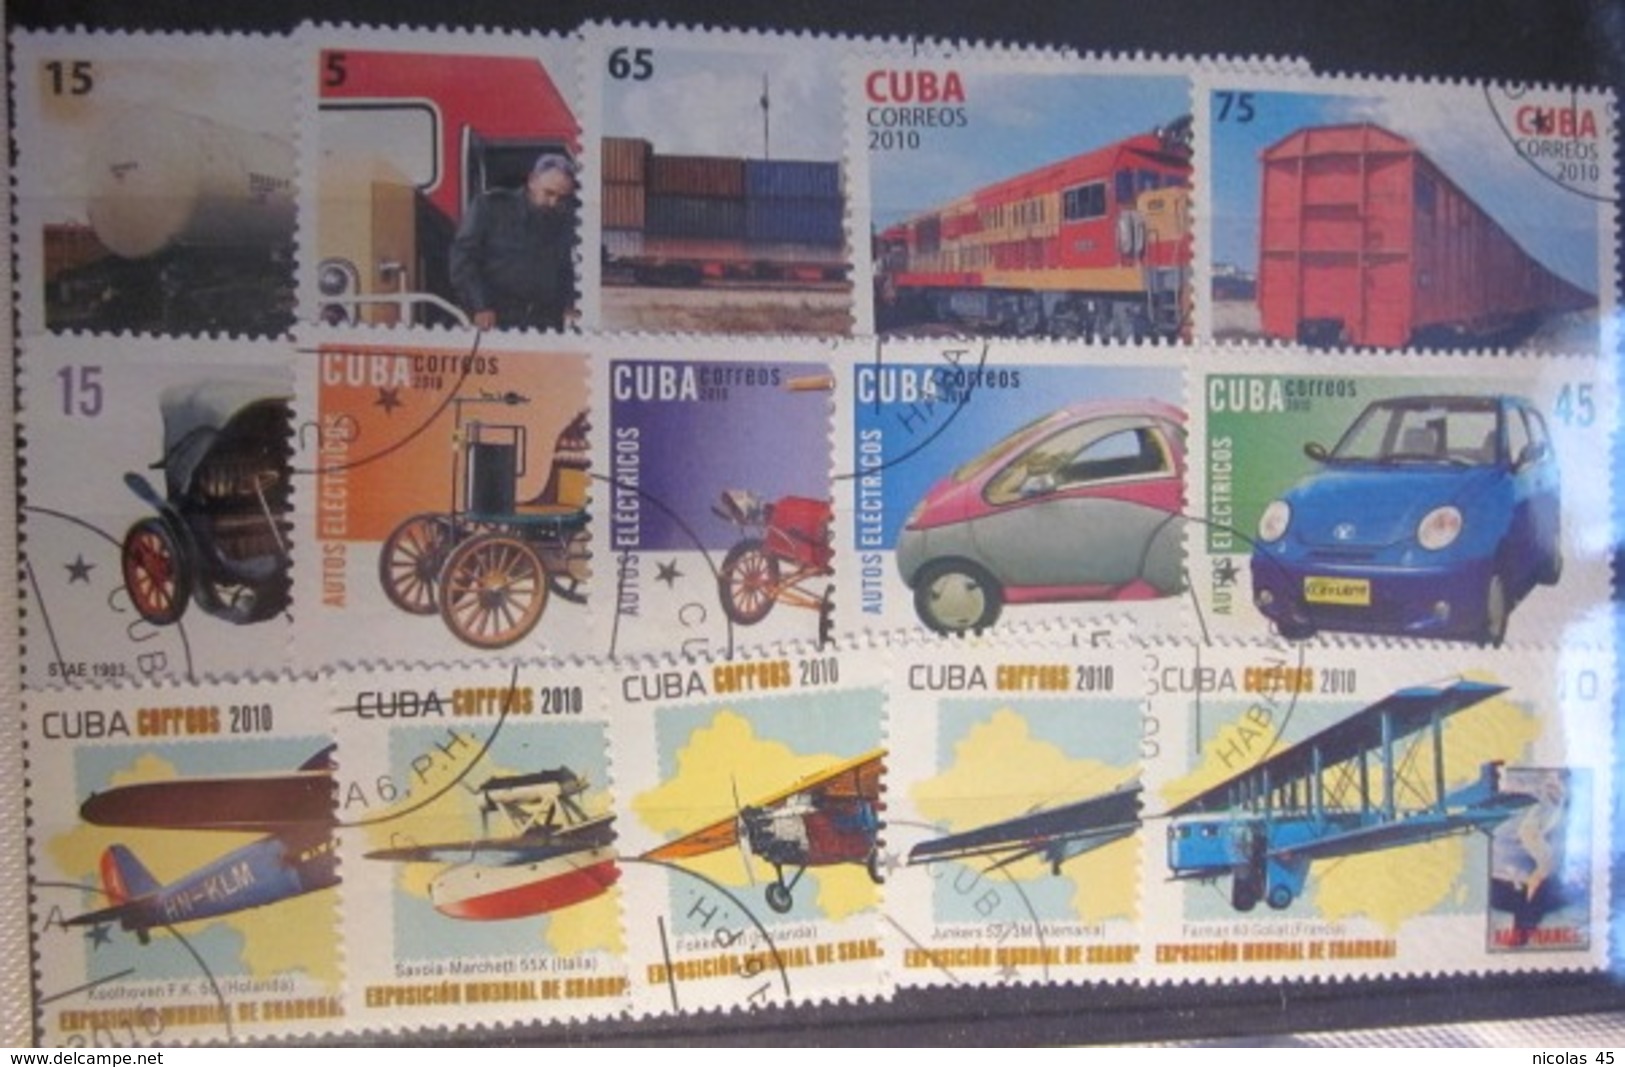 Gros lot timbres monde - Thématiques - Voir photos